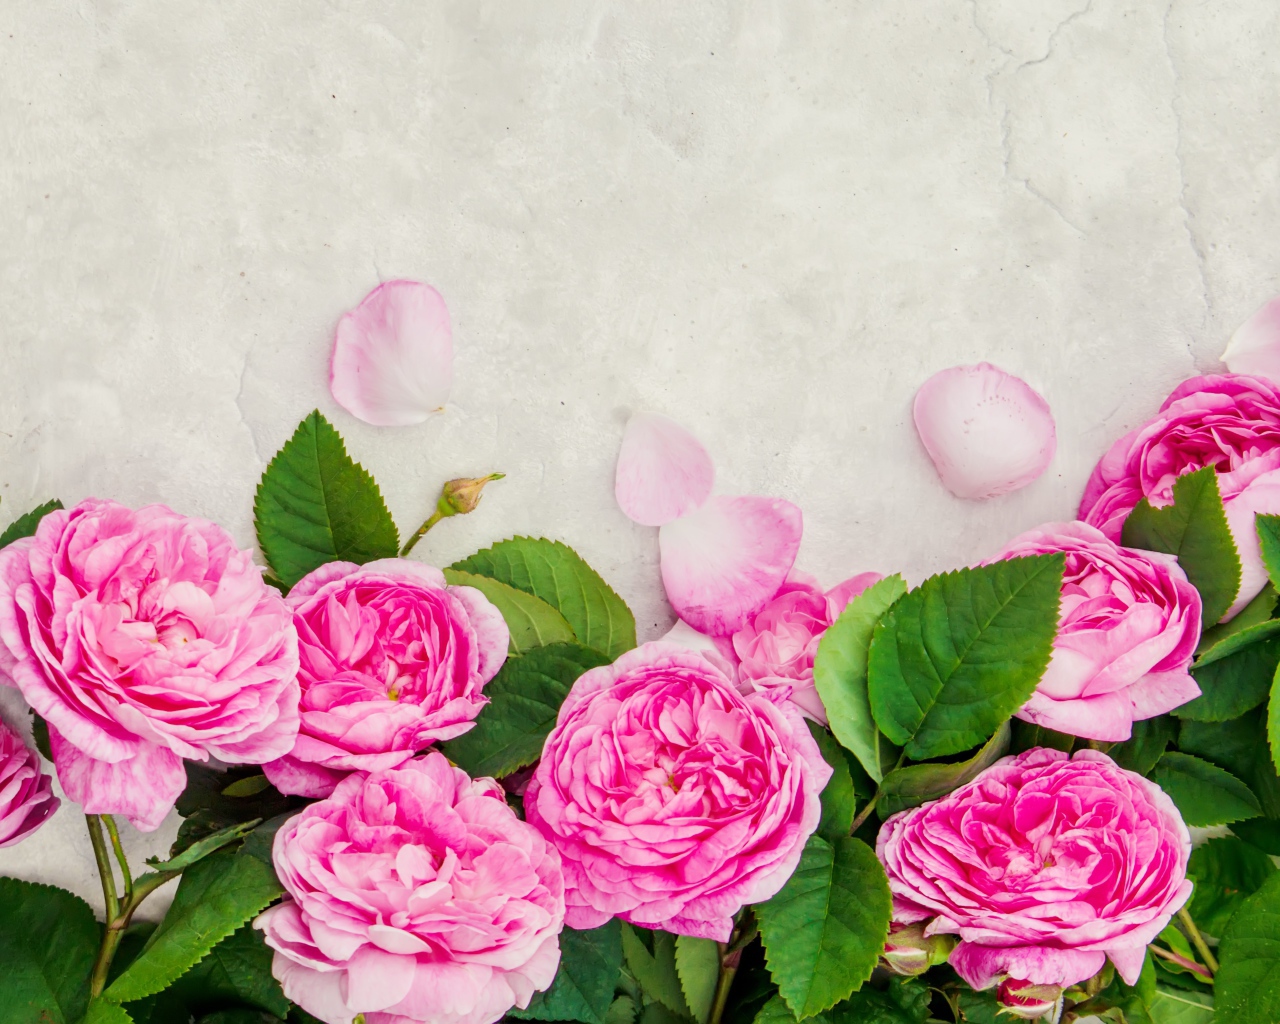 Розовые розы с лепестками на сером фоне